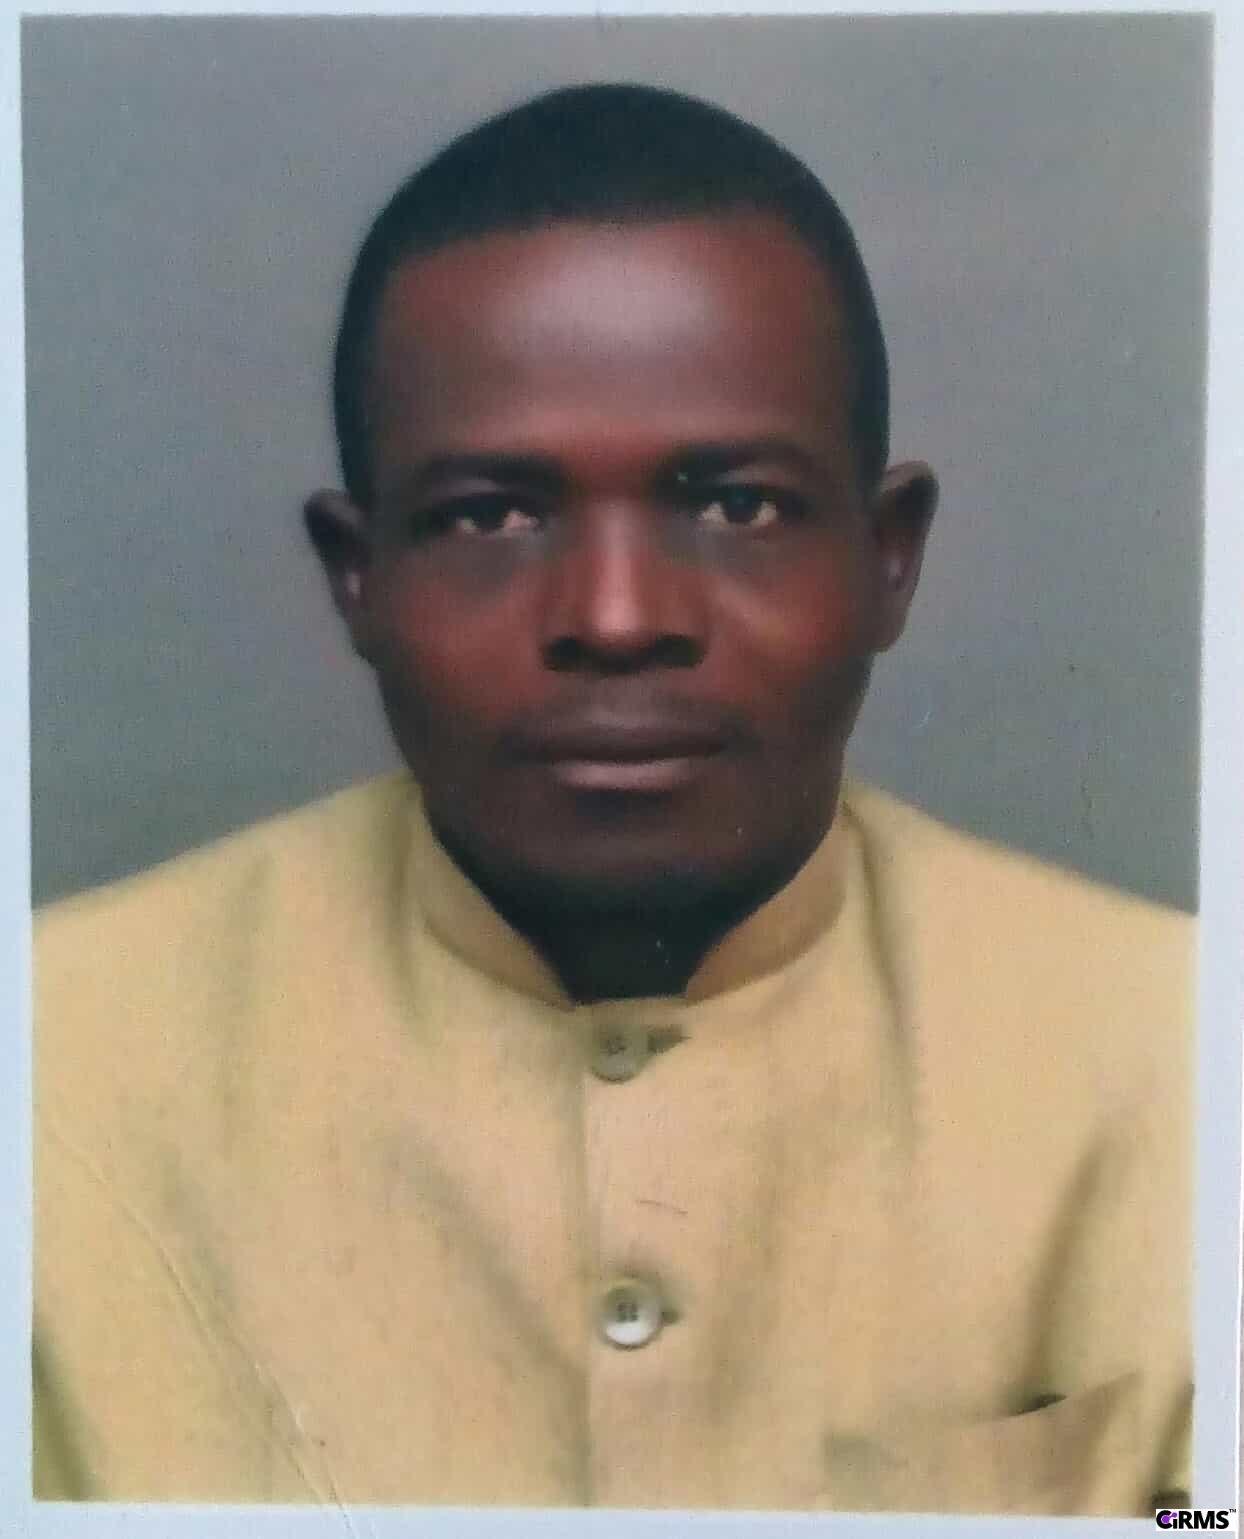 Dr. Iloraah Samuel Udobi